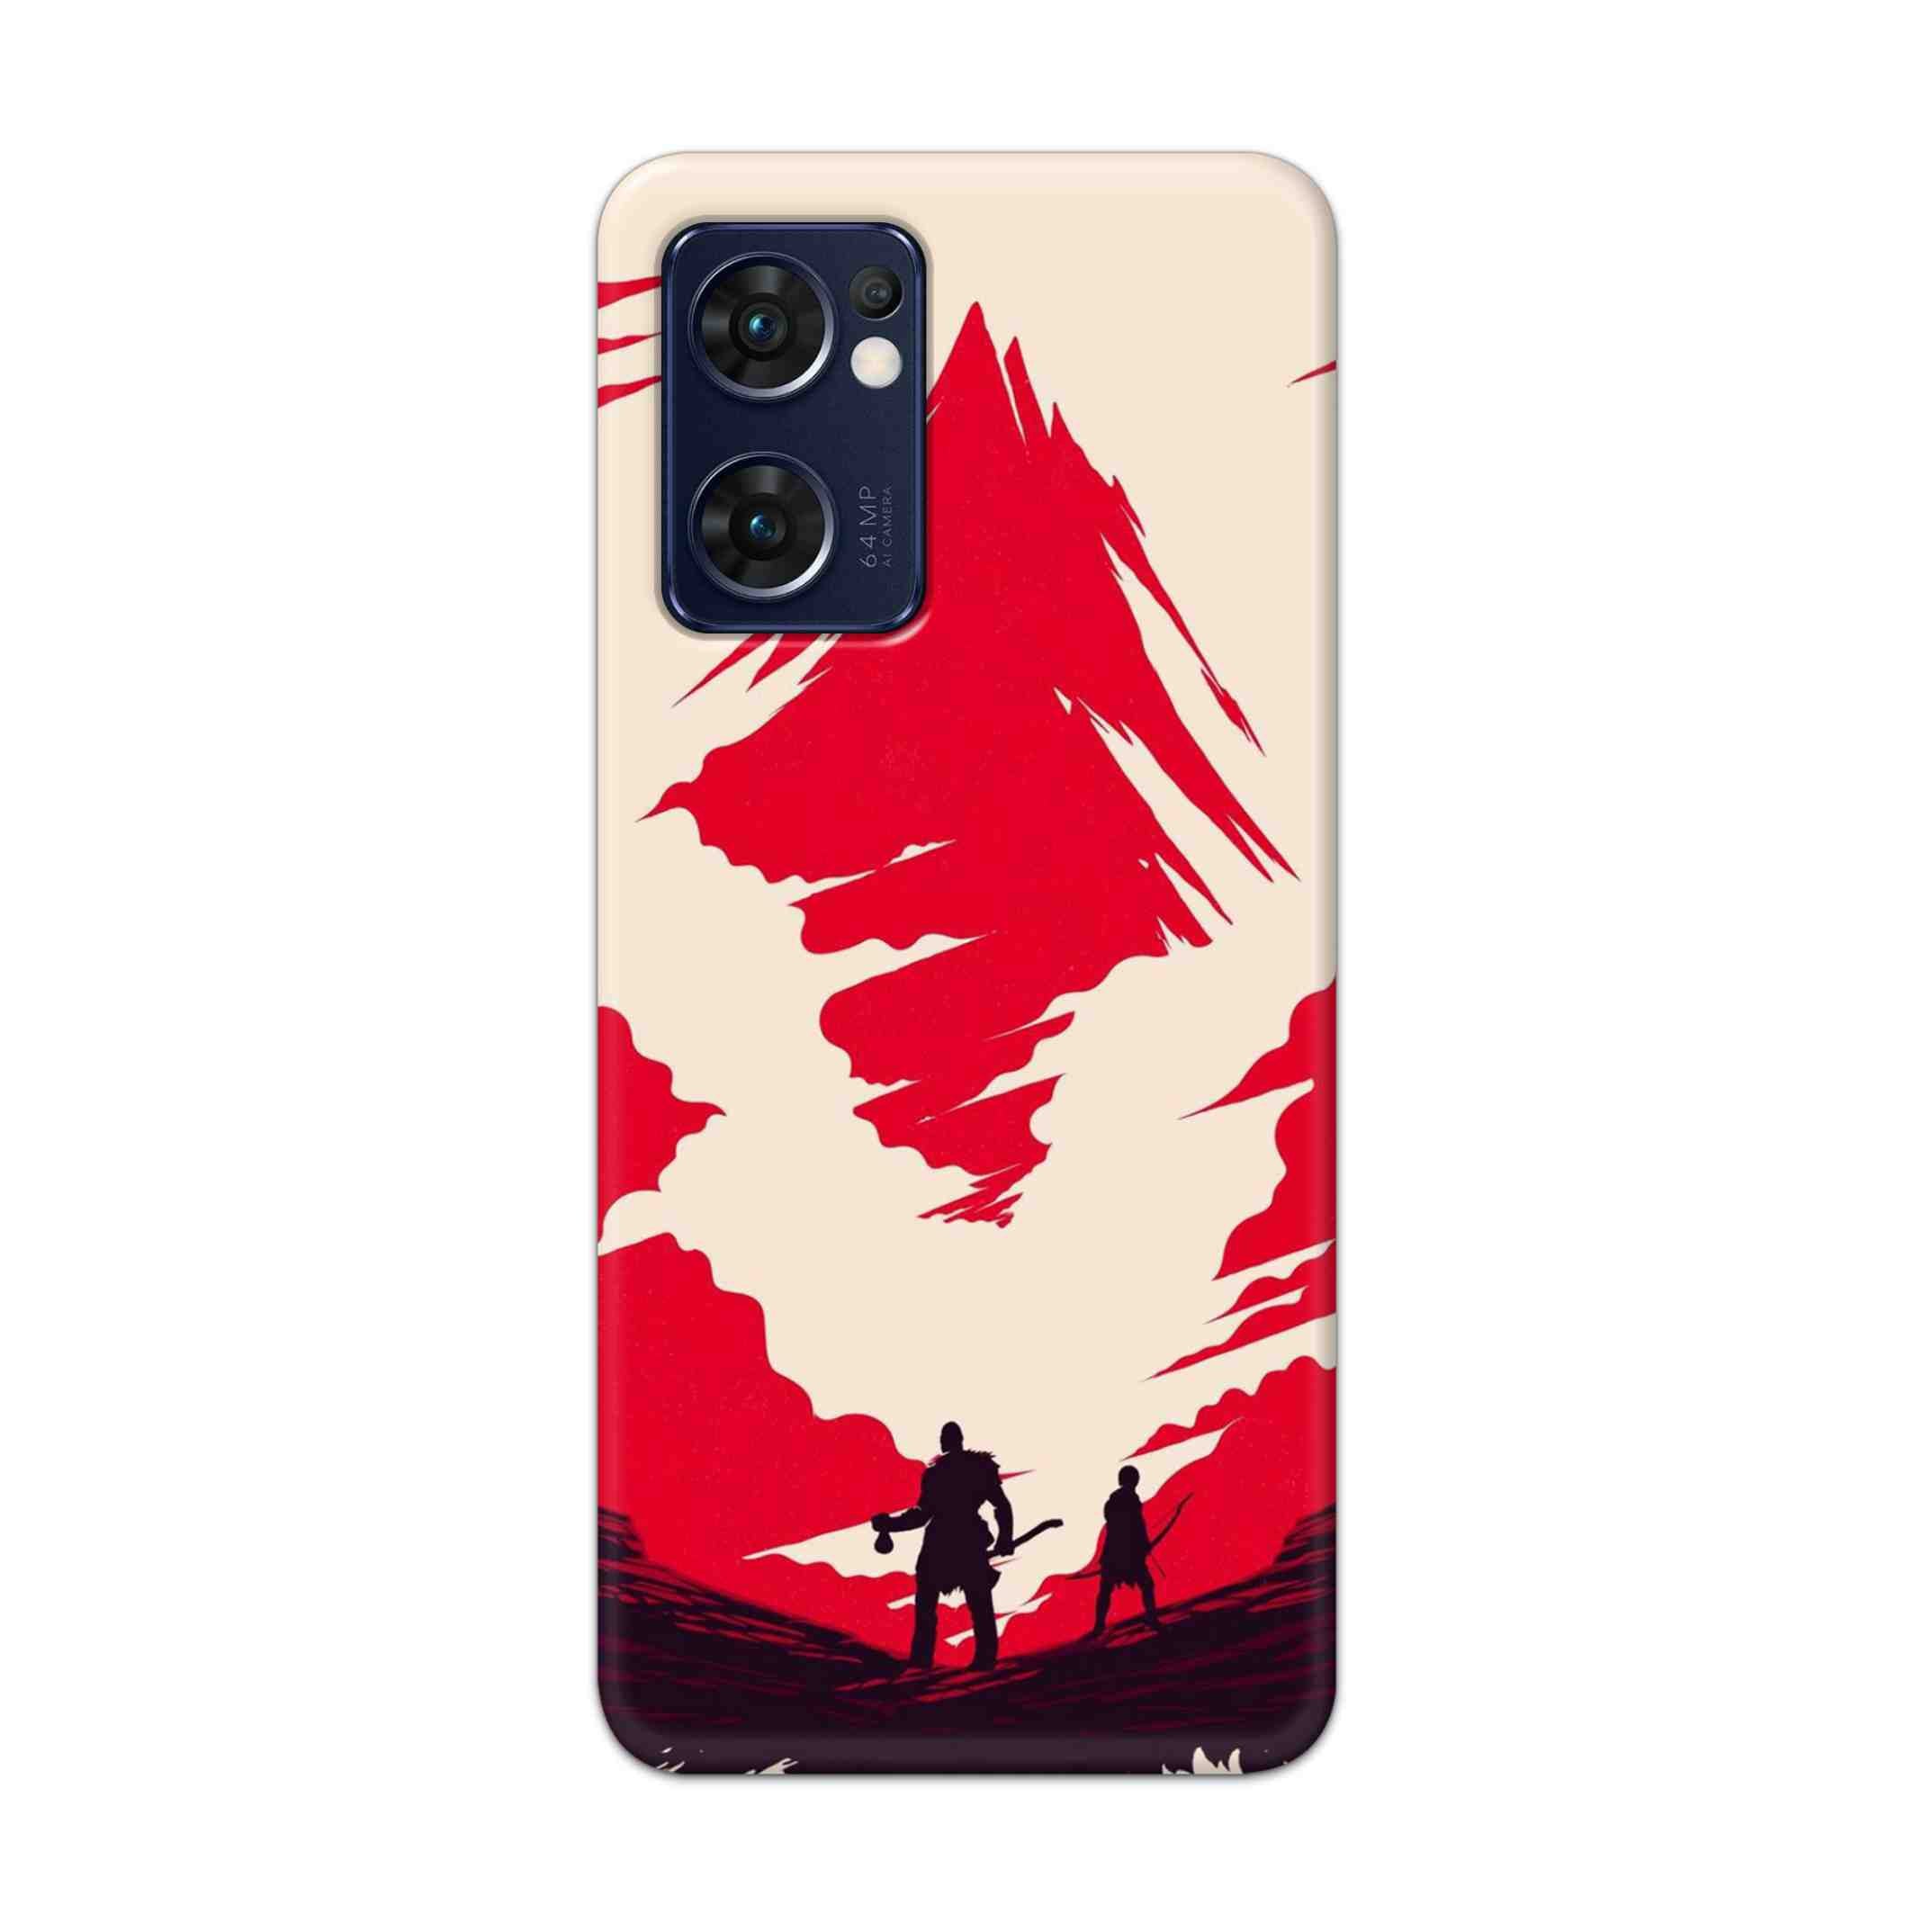 Buy God Of War Art Hard Back Mobile Phone Case Cover For Reno 7 5G Online